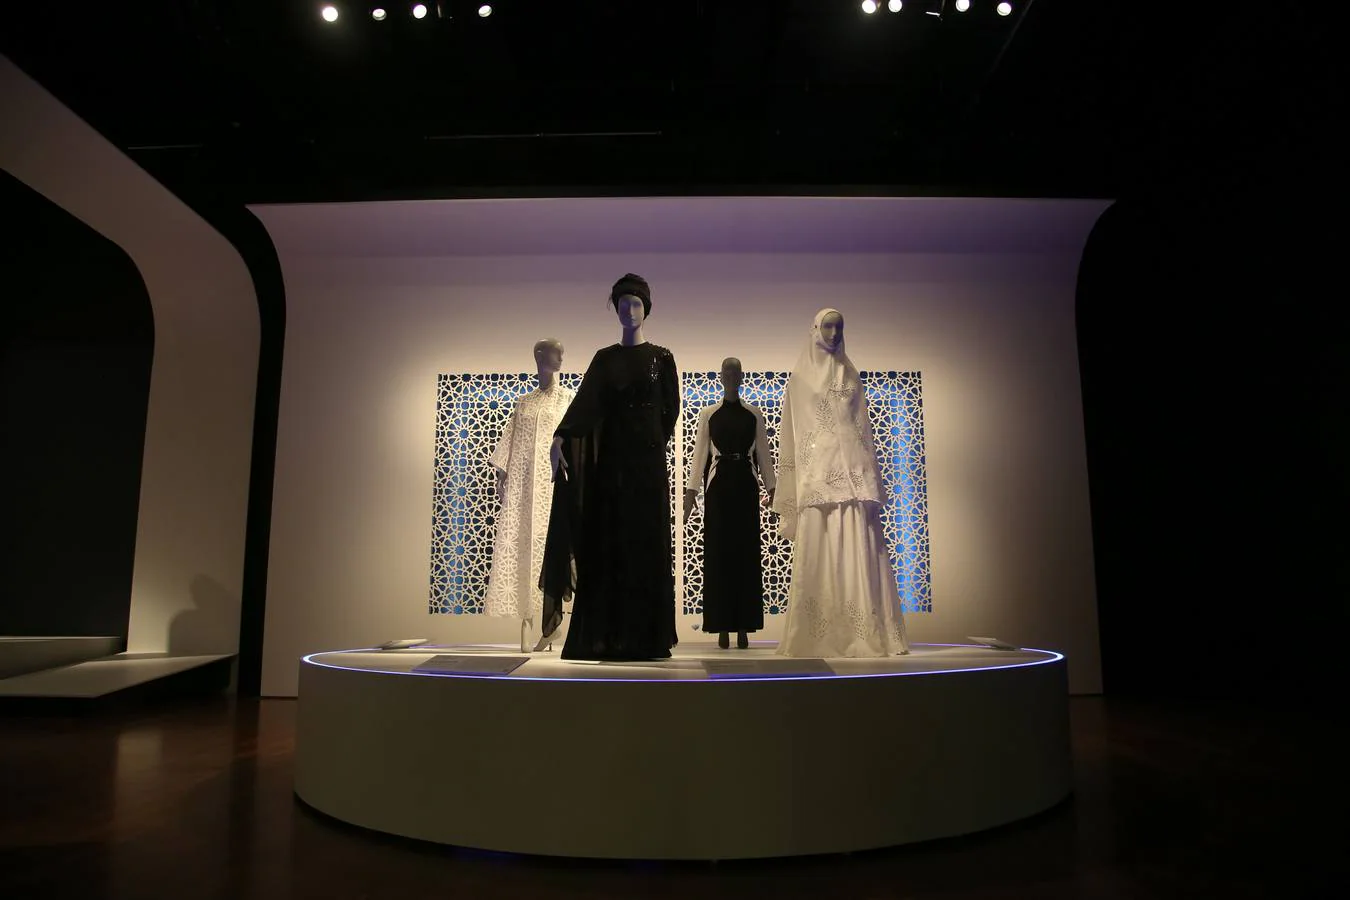 Es la primera gran exposición de museos que explora la naturaleza compleja y diversa de los códigos de vestimenta musulmanes en todo el mundo desde el estilo de alta gama, la ropa deportiva y el aspecto único personalizado de diferentes interpretaciones religiosas y culturas de diseñadores emergentes y establecidos